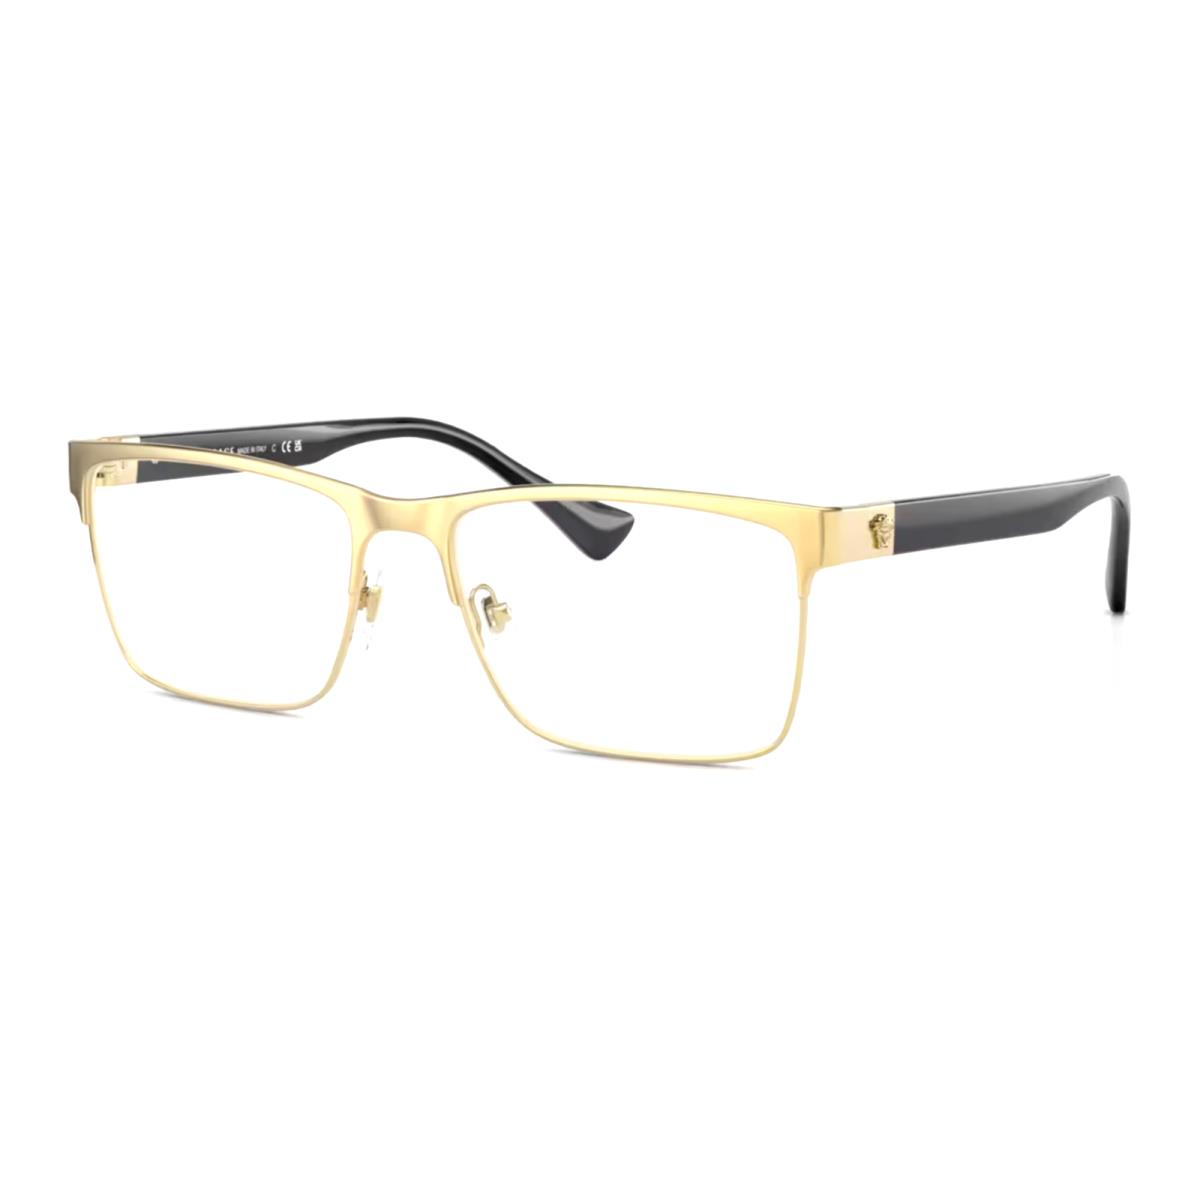 Versace Rx-able Eyeglasses Mod. 1285 1002 56-17 150 Gold Black Frames - Frame: Gold, Lens: